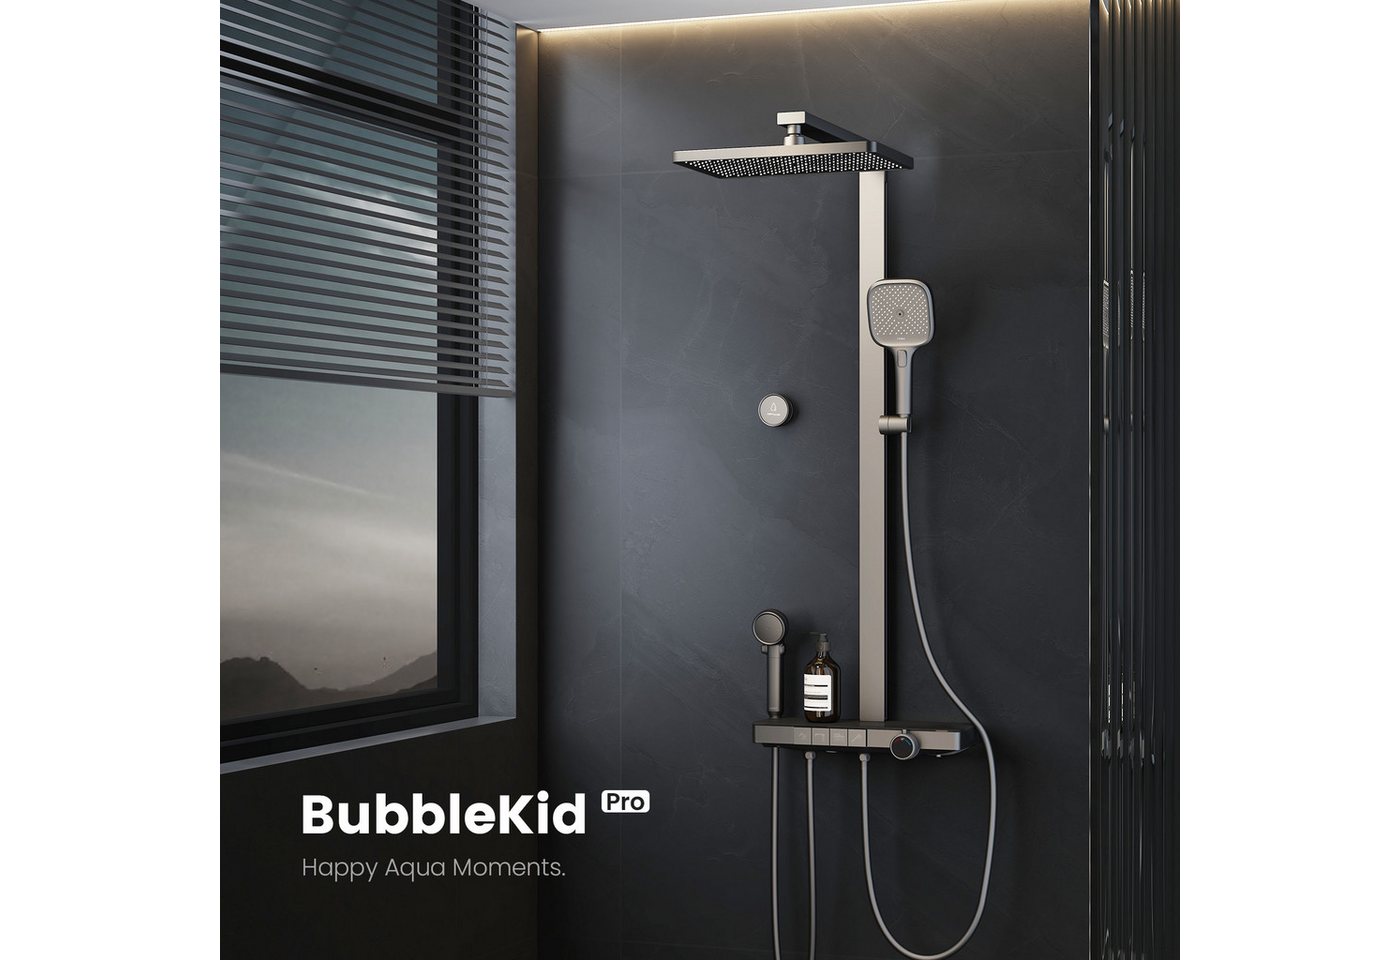 EMKE Duschsystem Brausegarnitur mit Thermostat Bluetooth-Steuerung Entwässerung, Höhe 113 cm, 4 Strahlart(en), Regendusche,Kinderdusche,Bluetooth,Anthrazit Matt von EMKE